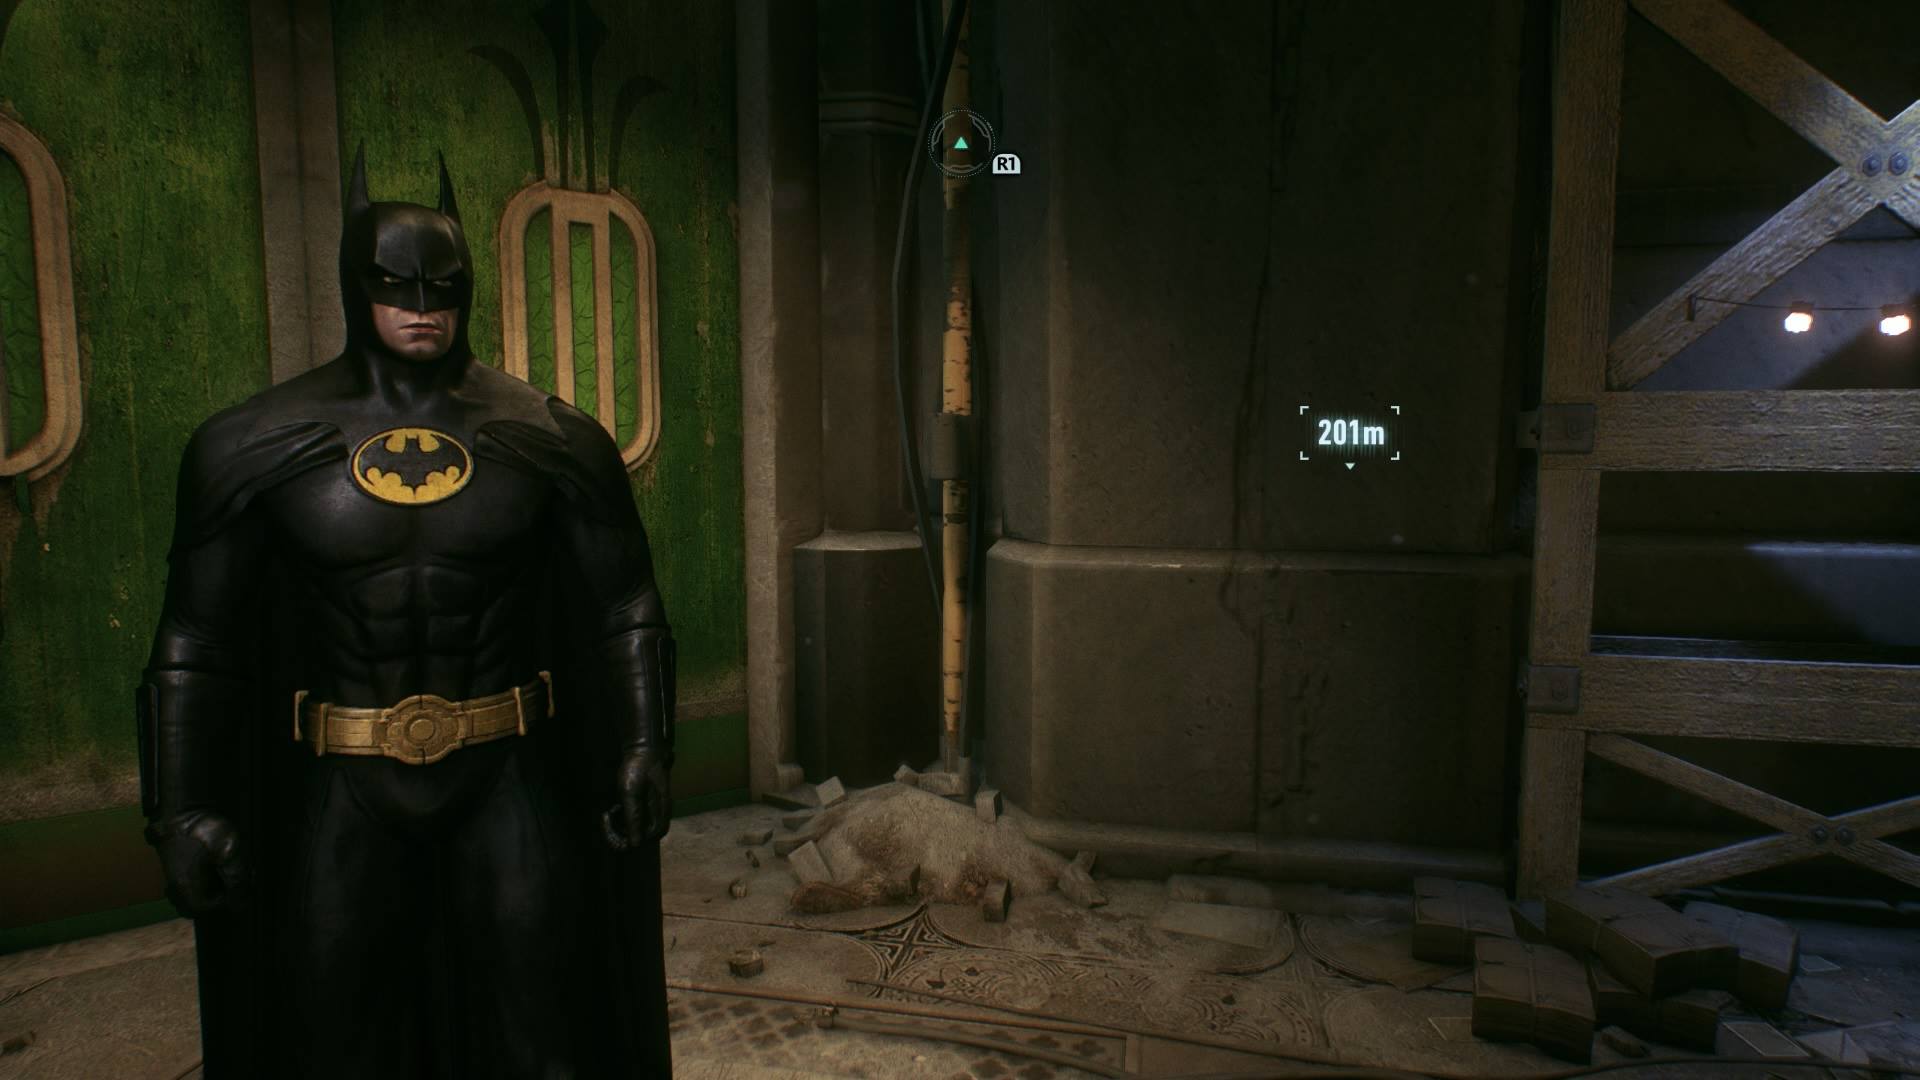 Estrenando traje en Batman Arkham Knight